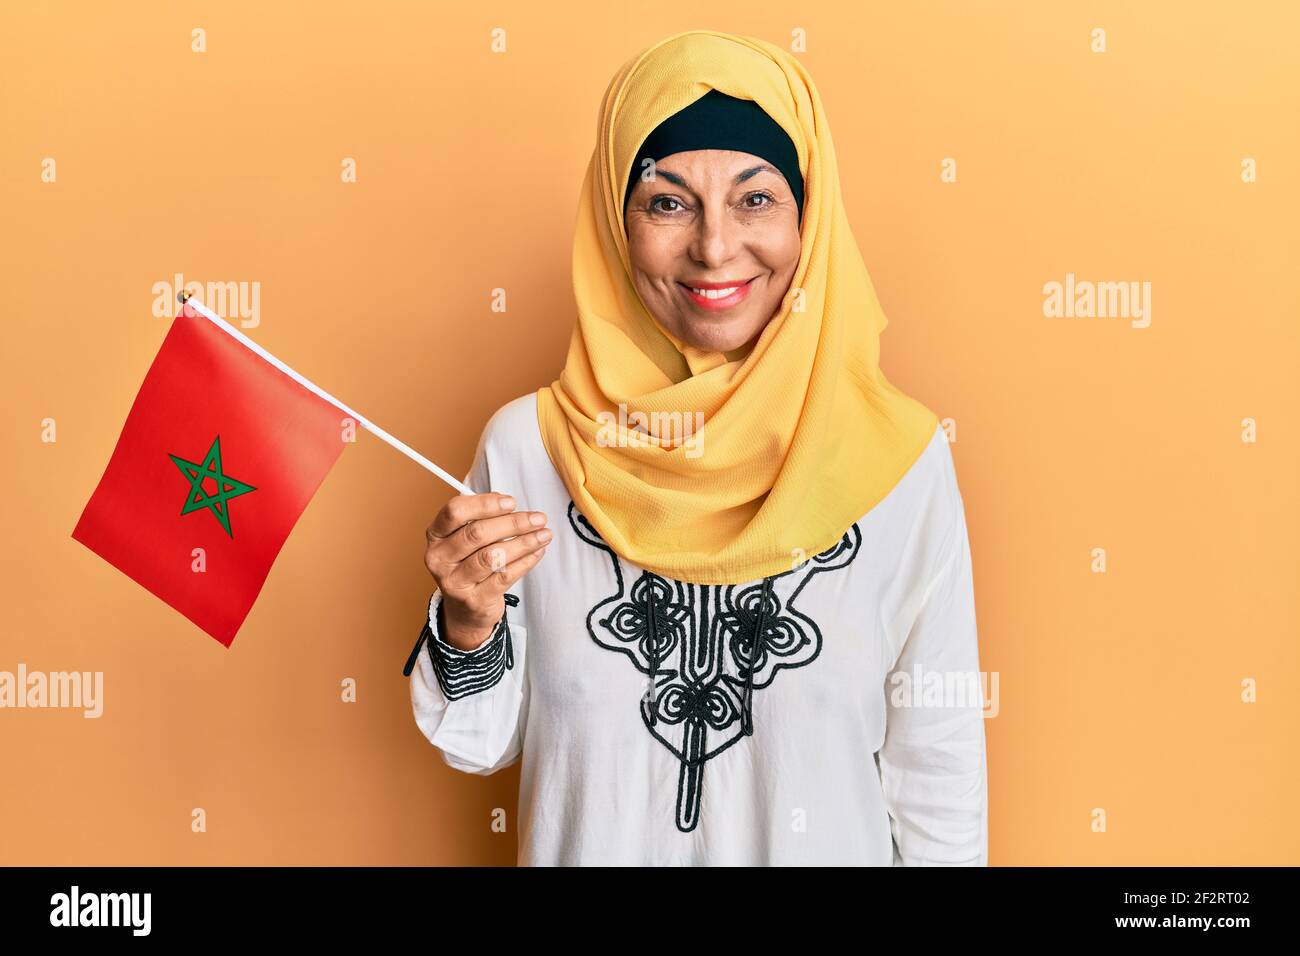 Mittelalter hispanische Frau trägt Hijab hält marokko Flagge suchen Positiv und glücklich stehen und lächeln mit einem selbstbewussten Lächeln Zeigt Zähne Stockfoto